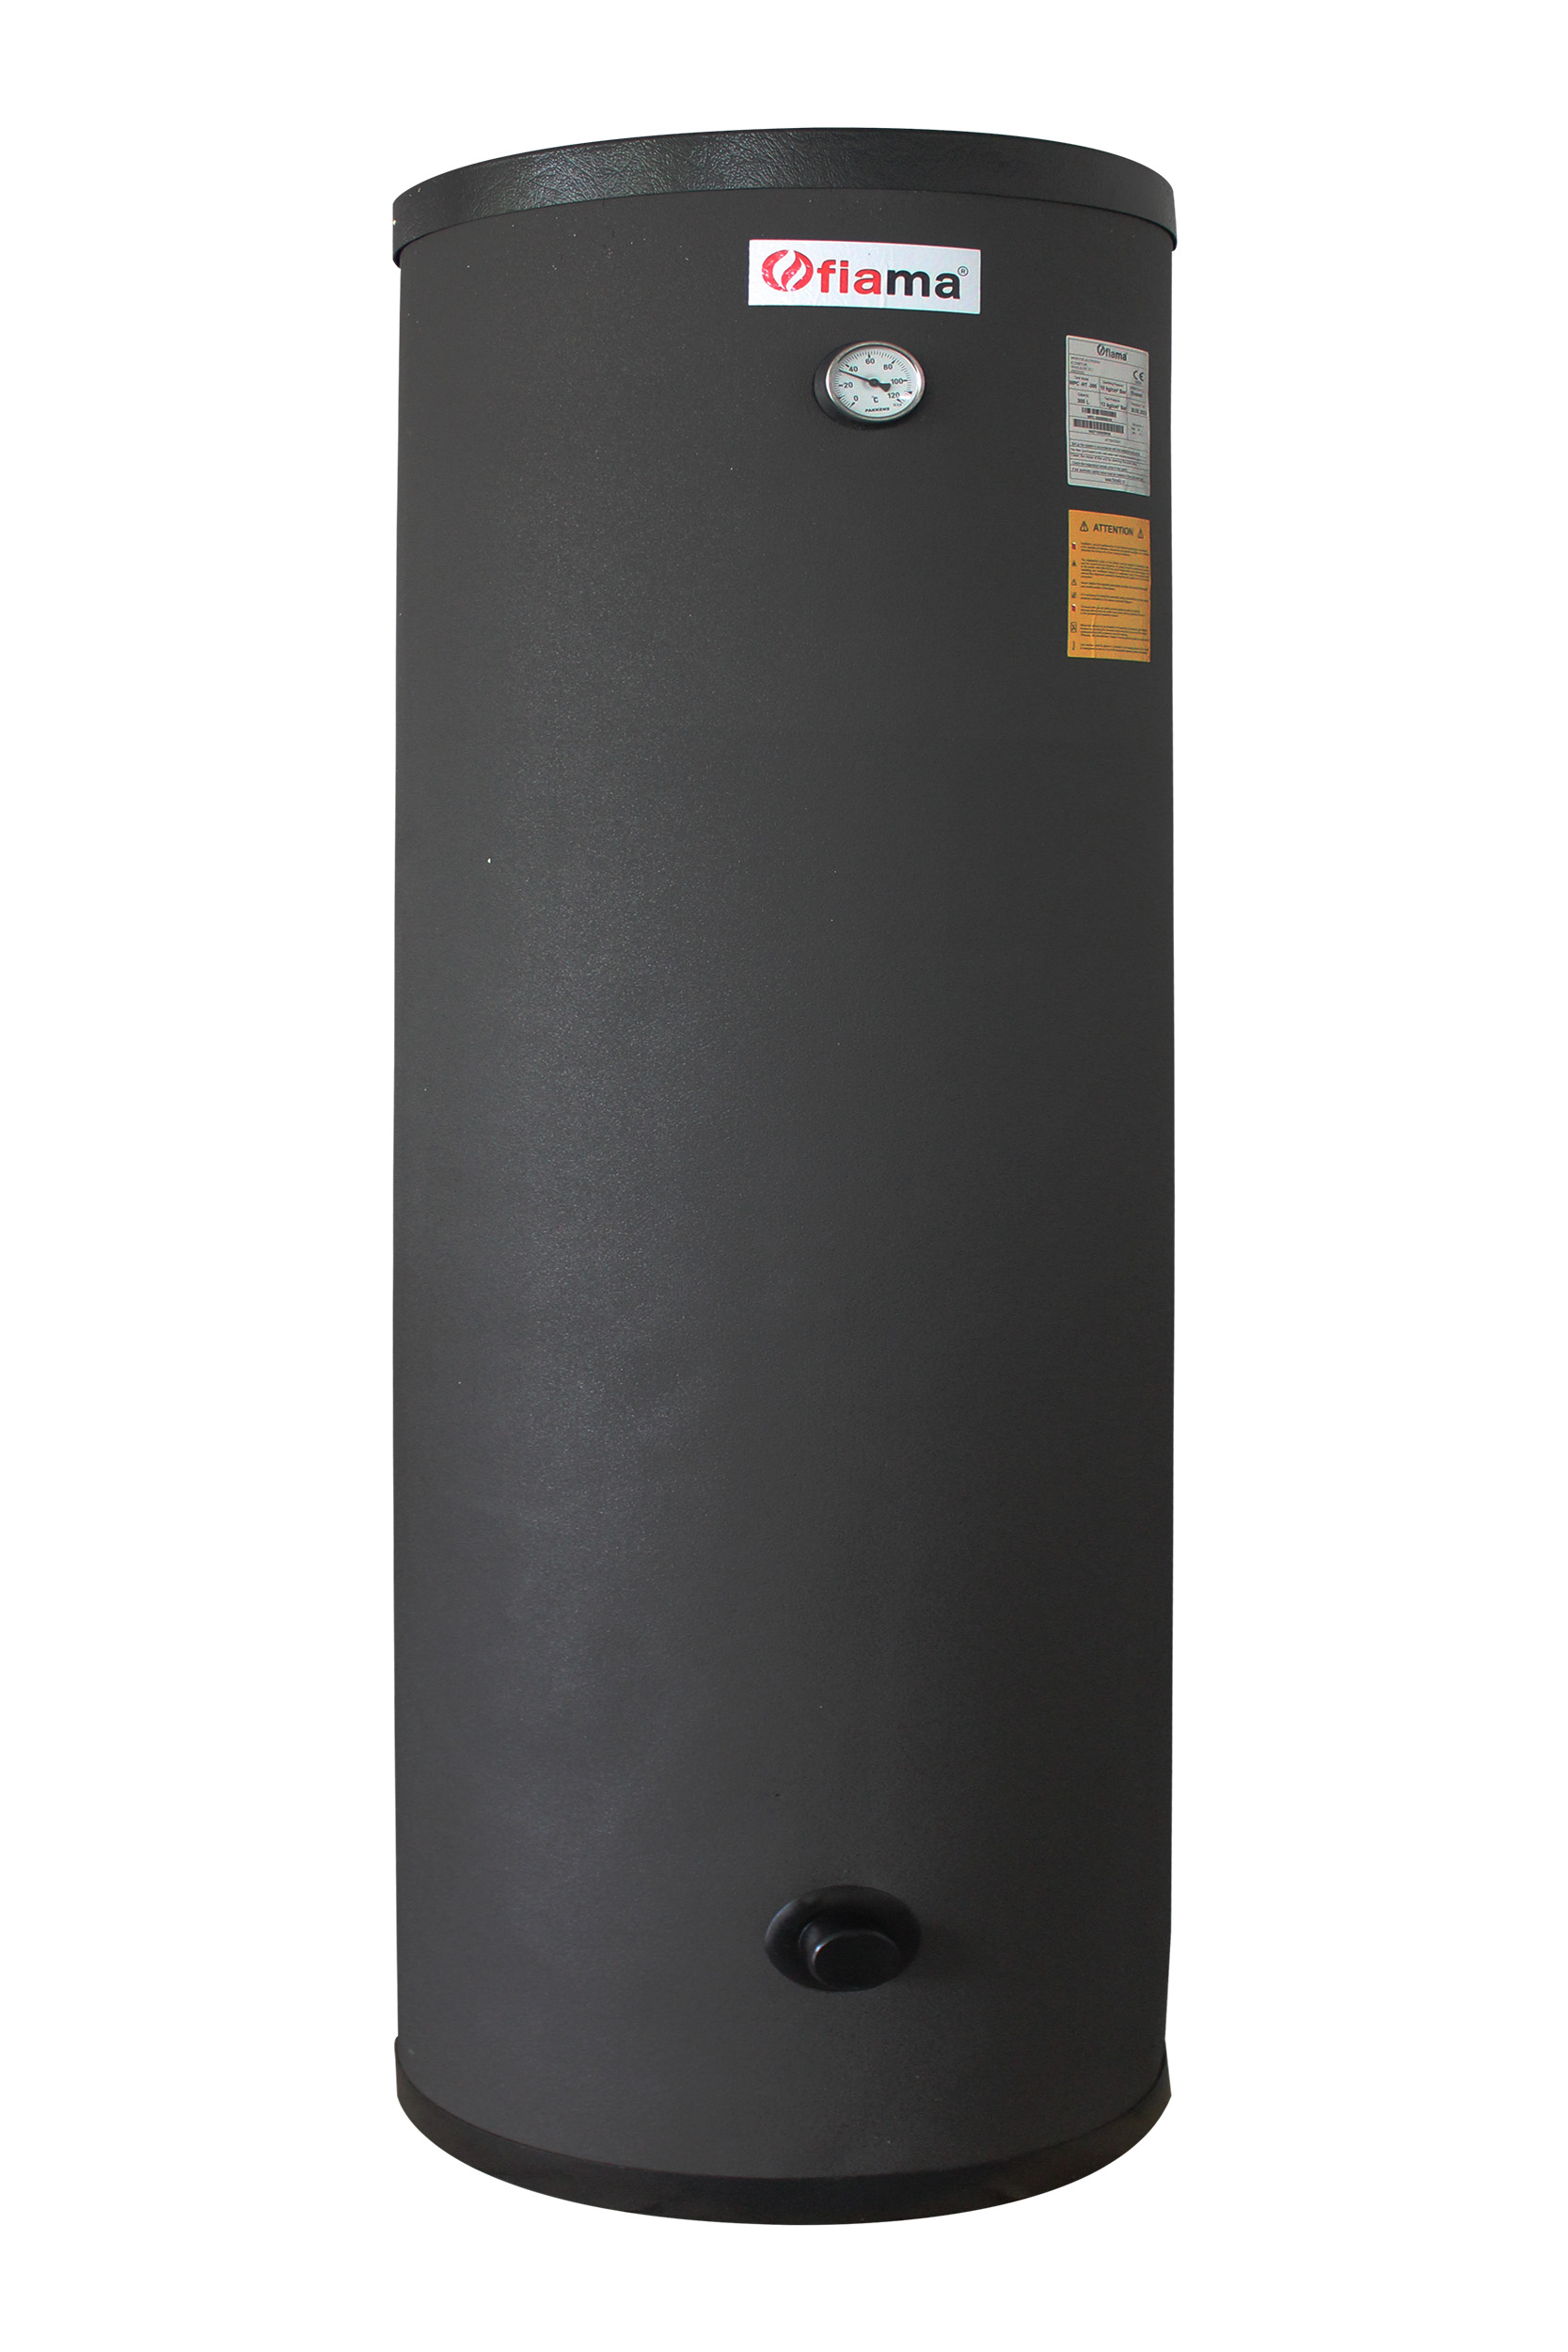 Poza Boiler cu 2 serpentine FIAMA WPC HT 300 LT 2S, pentru centrala termica si solar, montaj pe sol, izolatie termica, manta de protectie, serpentine bivalent